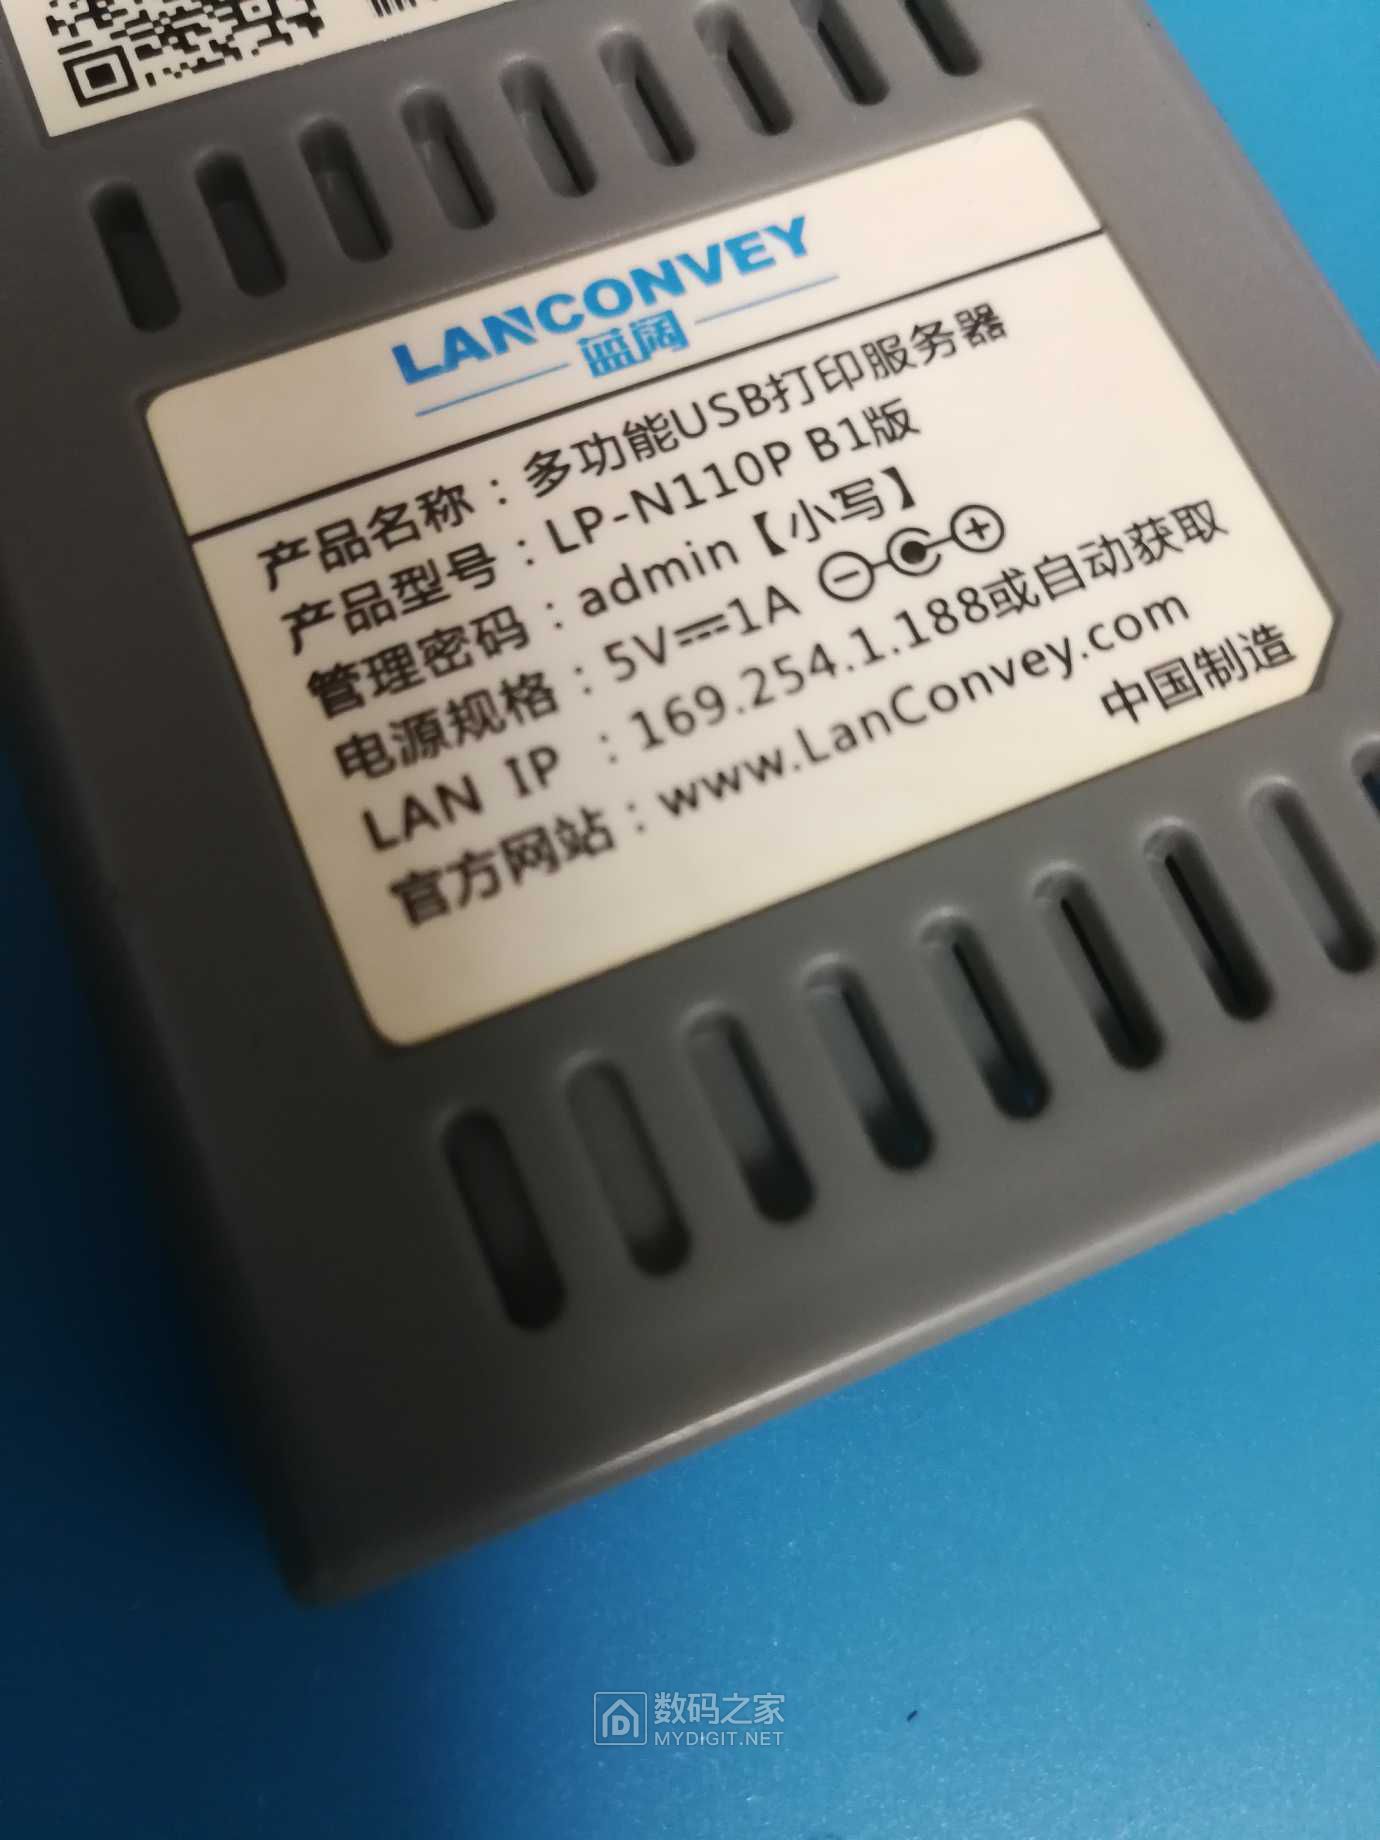 LanConvey LP-N110P